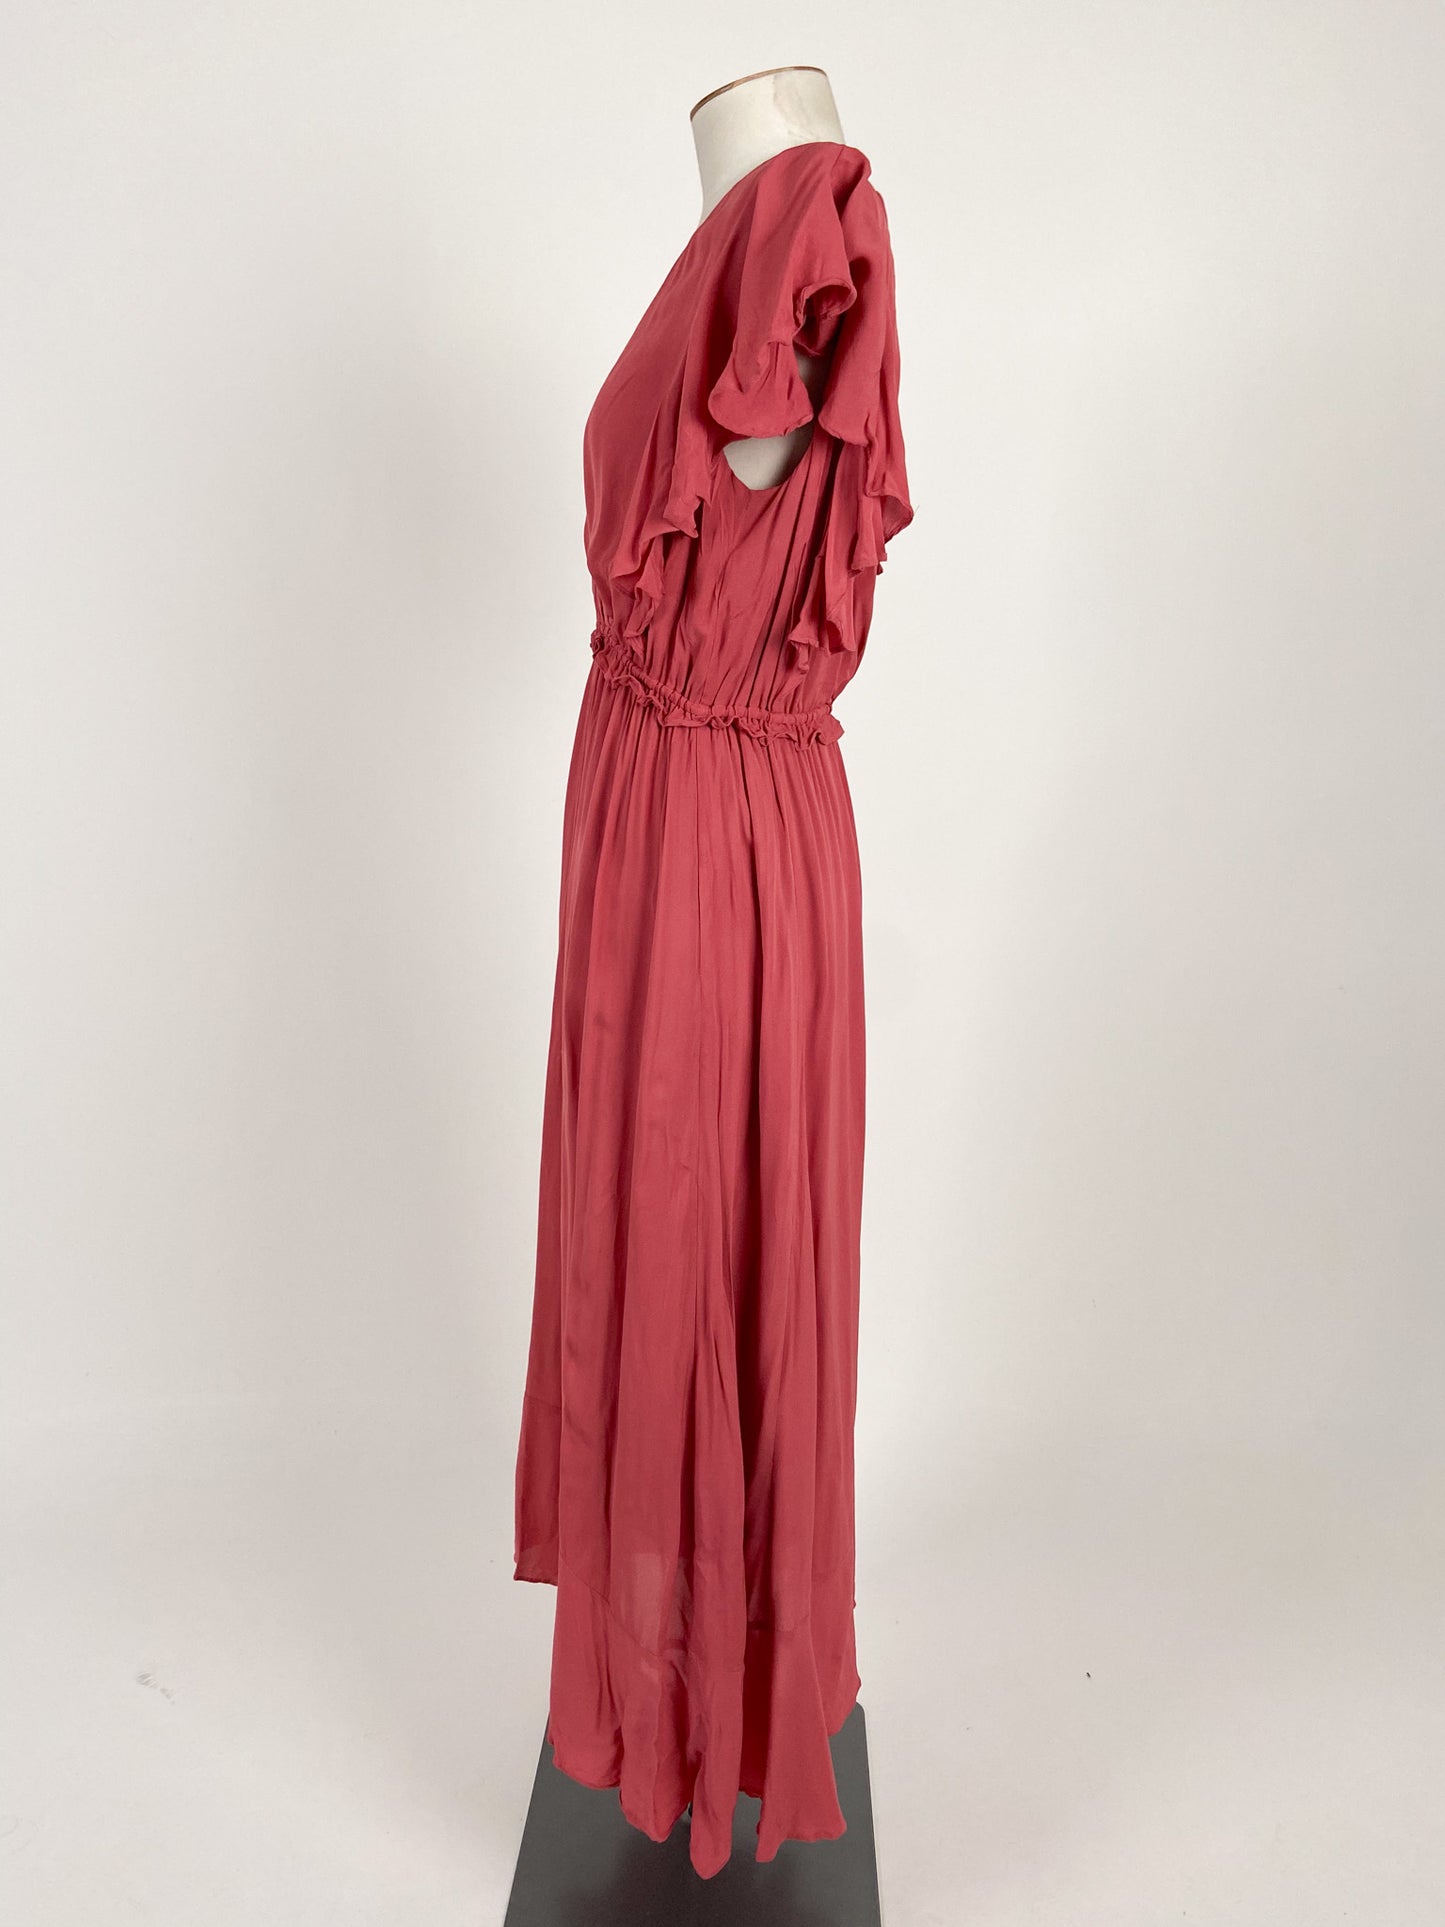 Witchery | Red Workwear Dress | Size 8